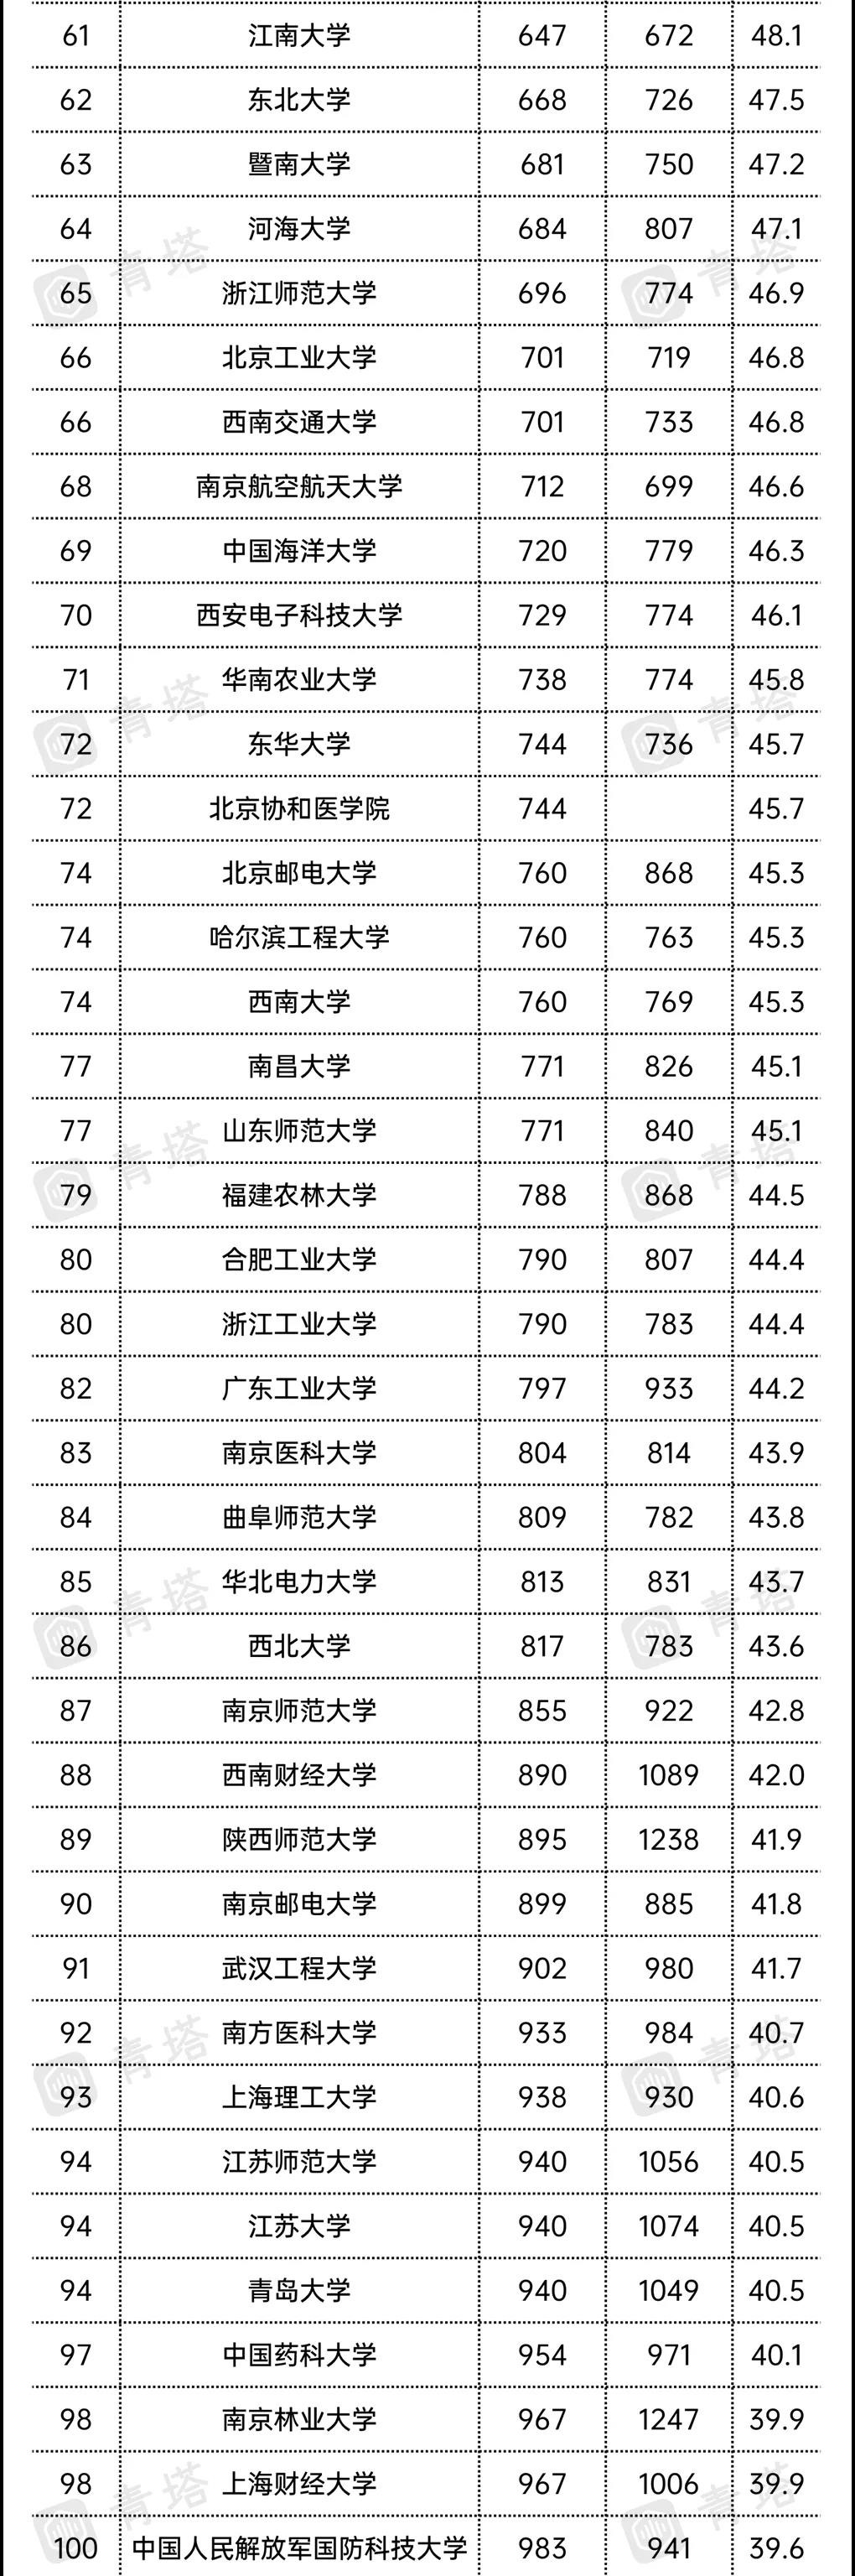 US News 2022中国大学排名：复旦第7，深大26，湖南大学全国第11